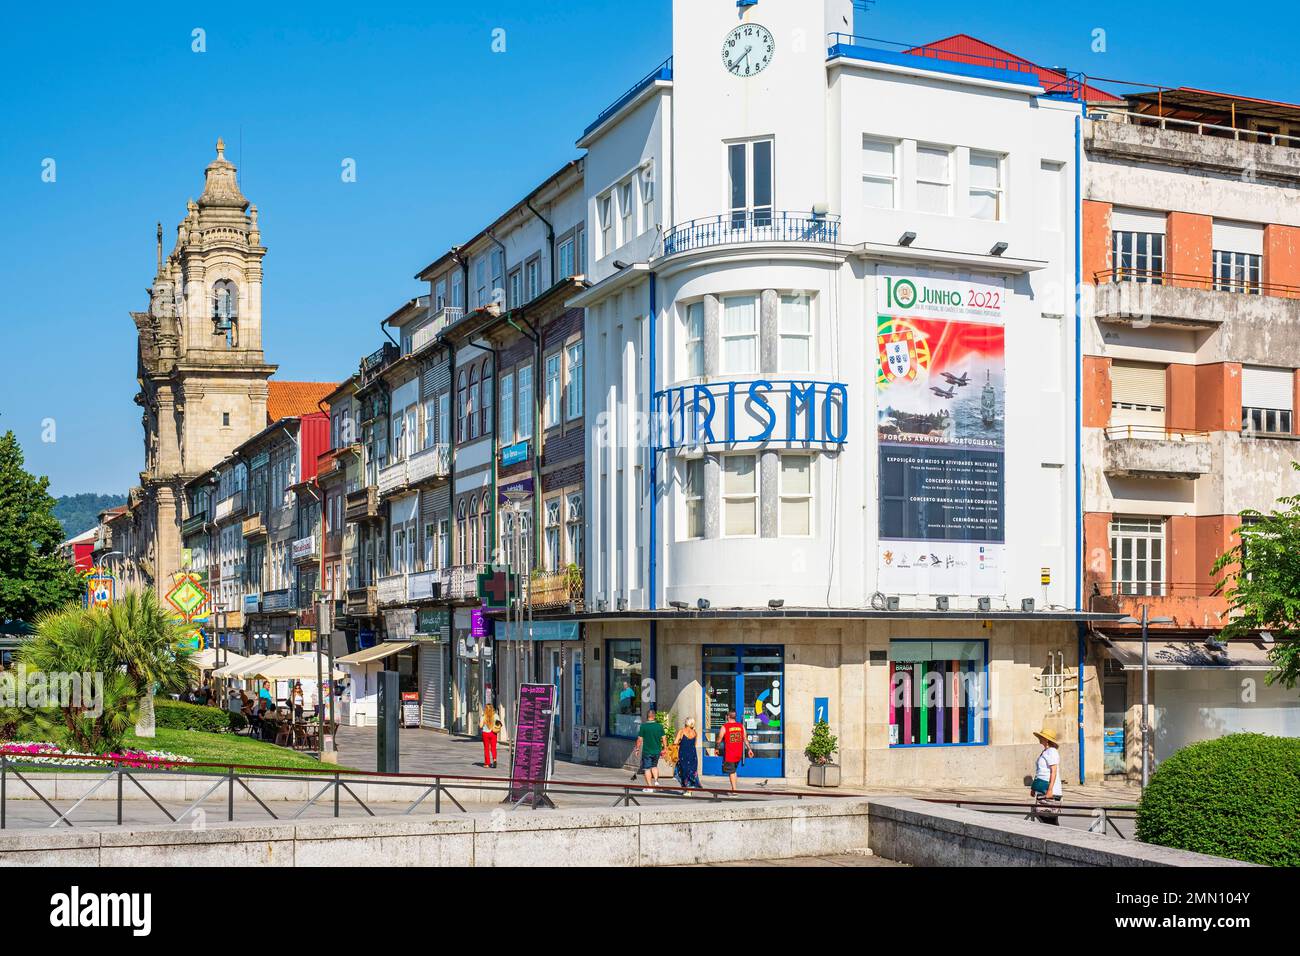 Portugal, Región Norte, Braga, Plaza de la República (Praca da República),  la oficina de turismo y la Basílica de los Congregados Fotografía de stock  - Alamy